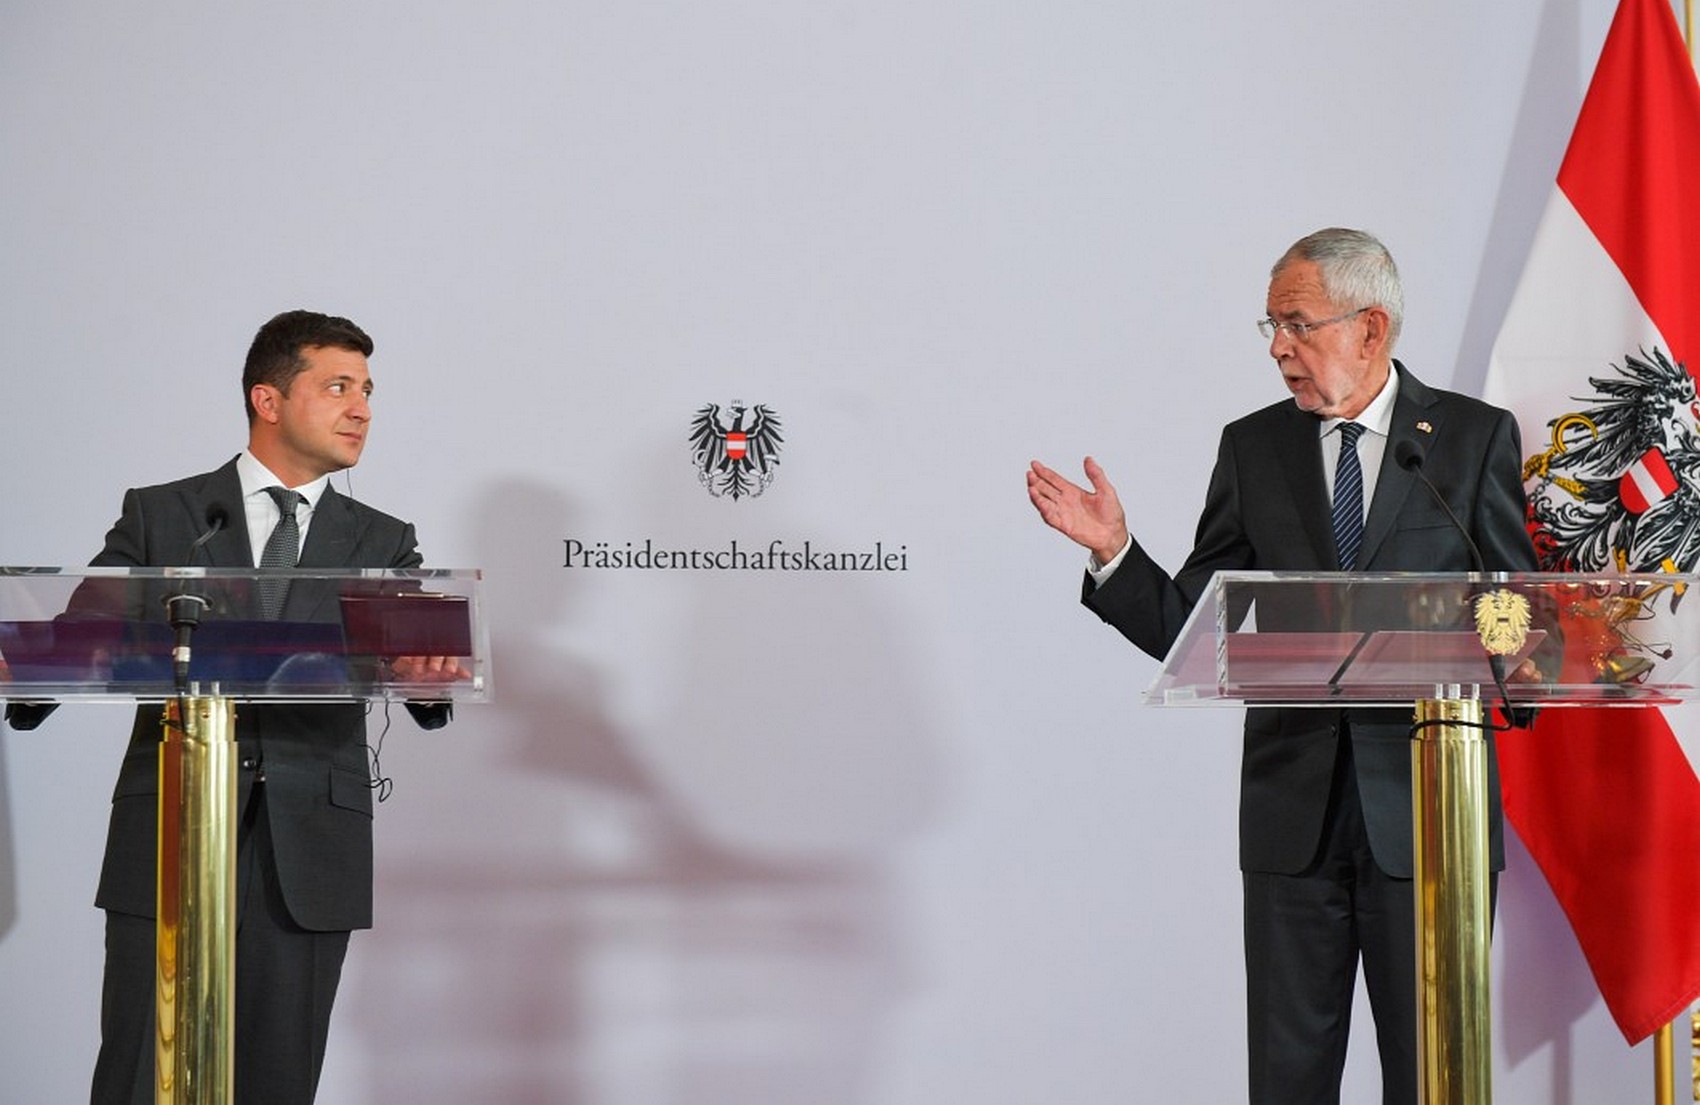 Австрия выделит 1 млн евро для помощи населению Донбасса